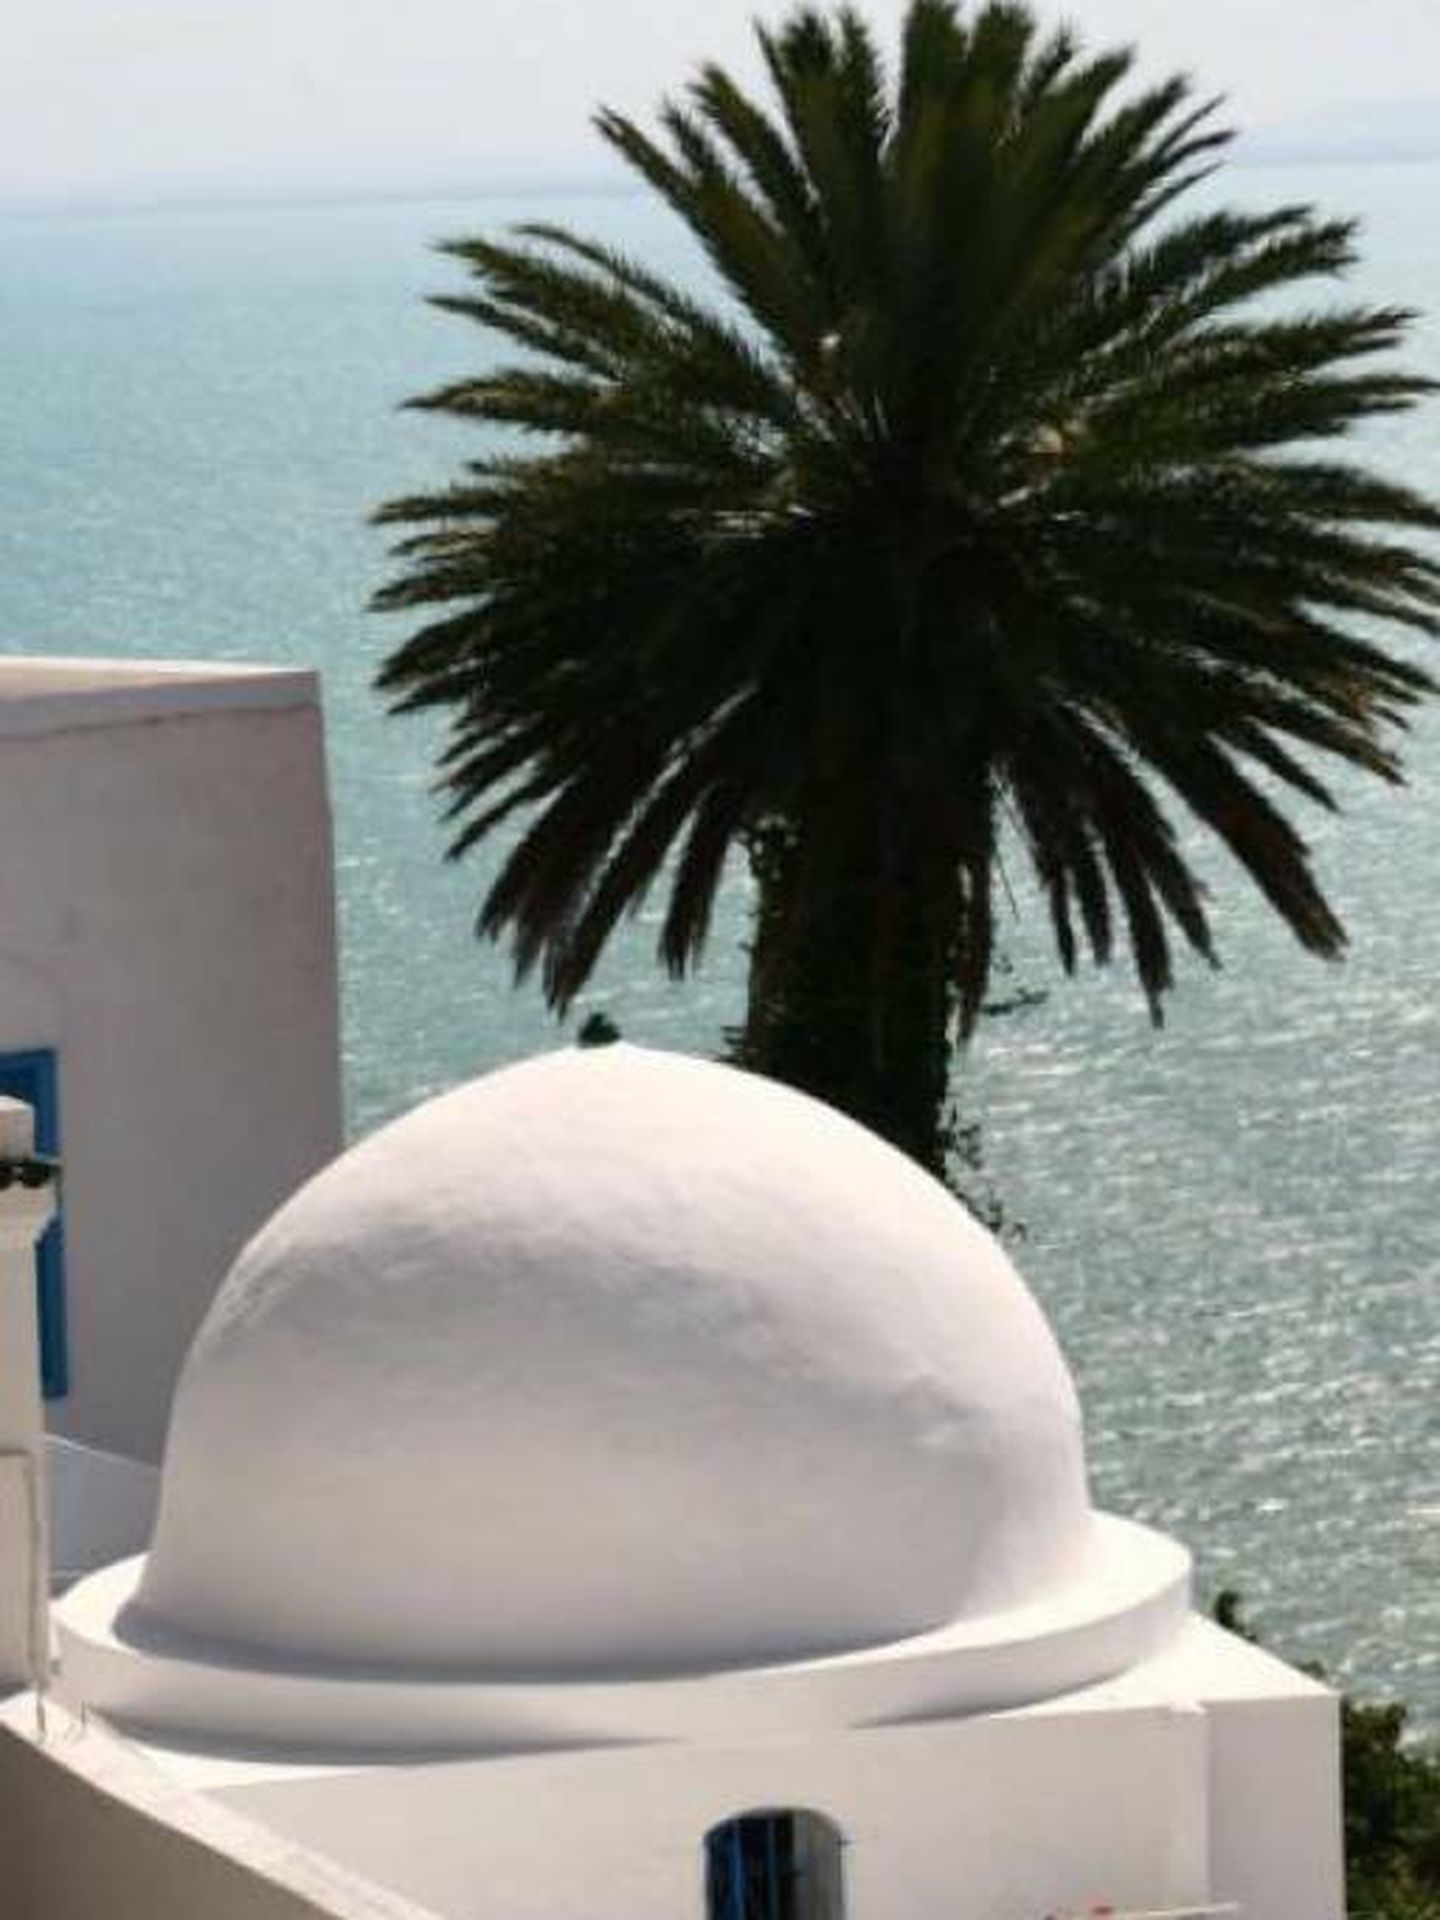 Sidi Bou Said se asoma al mar. (Foto: Turismo de Túnez)